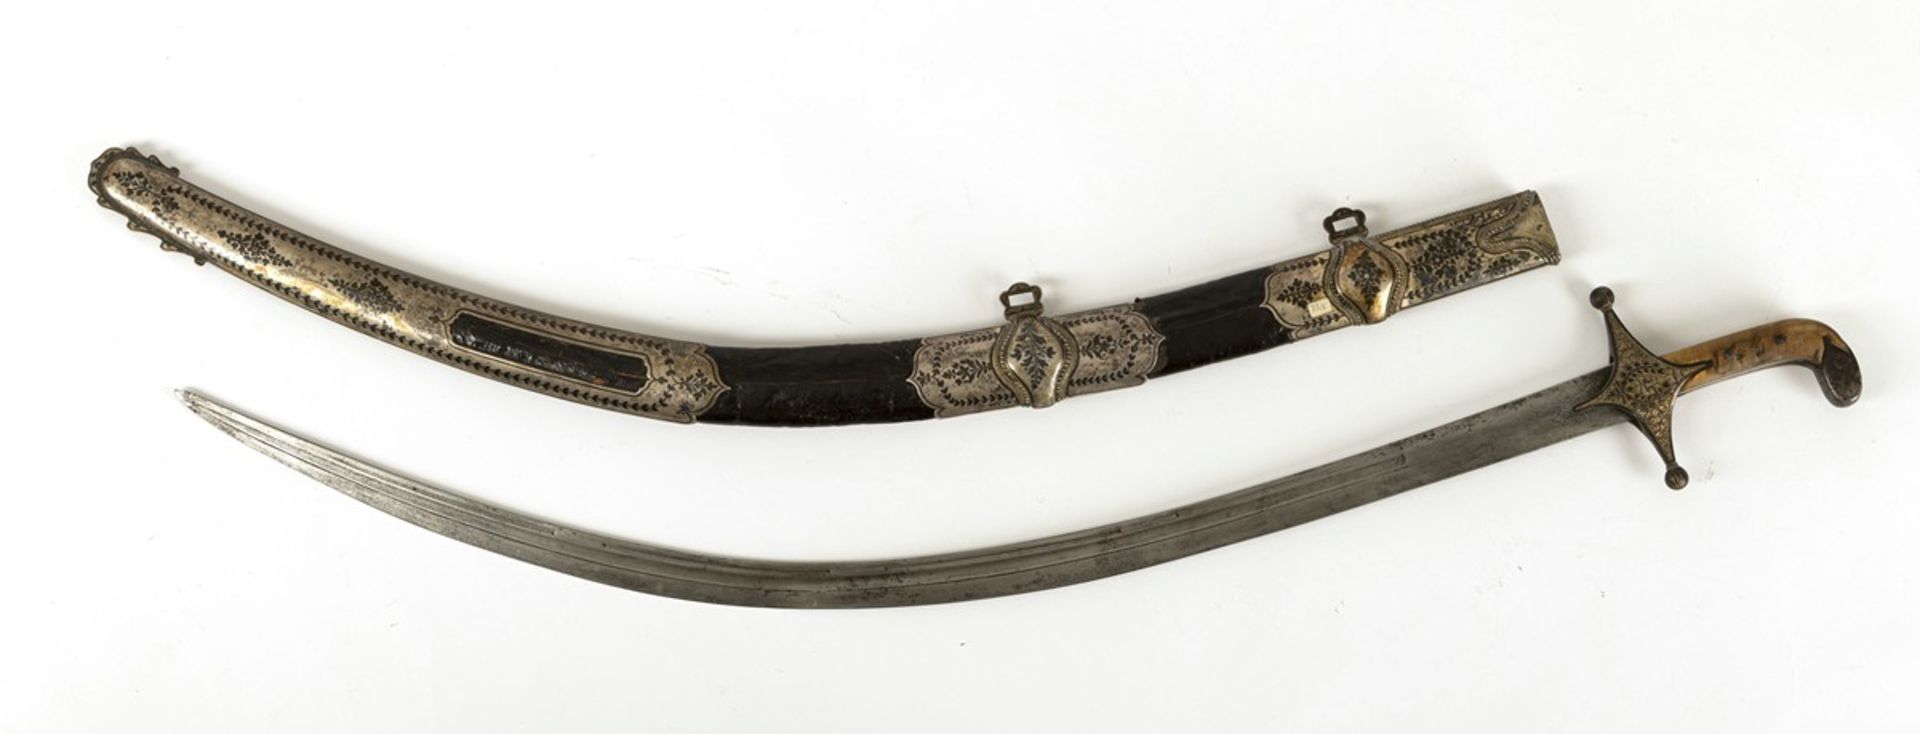 Datiertes Schwert m. Lederscheide und Silbermontierungen m. Niello-Dekor u. Griff aus Horn - Bild 2 aus 2